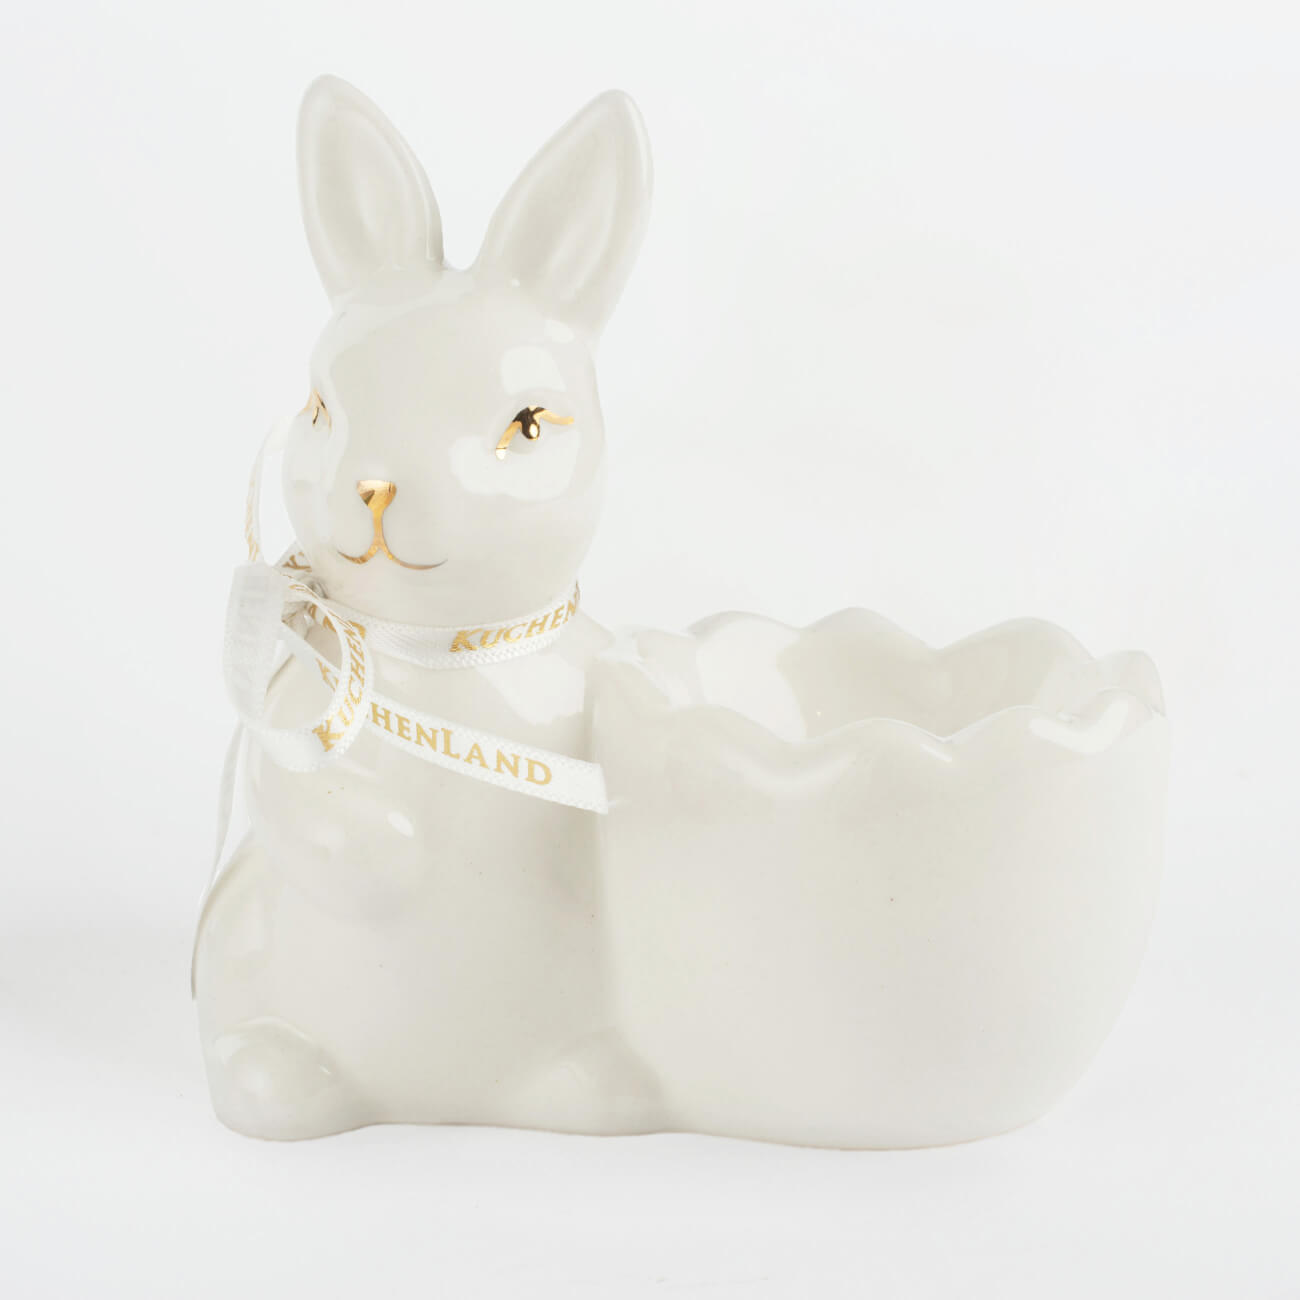 Подставка для яйца, 10 см, керамика, бело-золотистая, Кролик со скорлупкой, Easter gold подставка для яйца 8х8 см дерево кролик natural easter